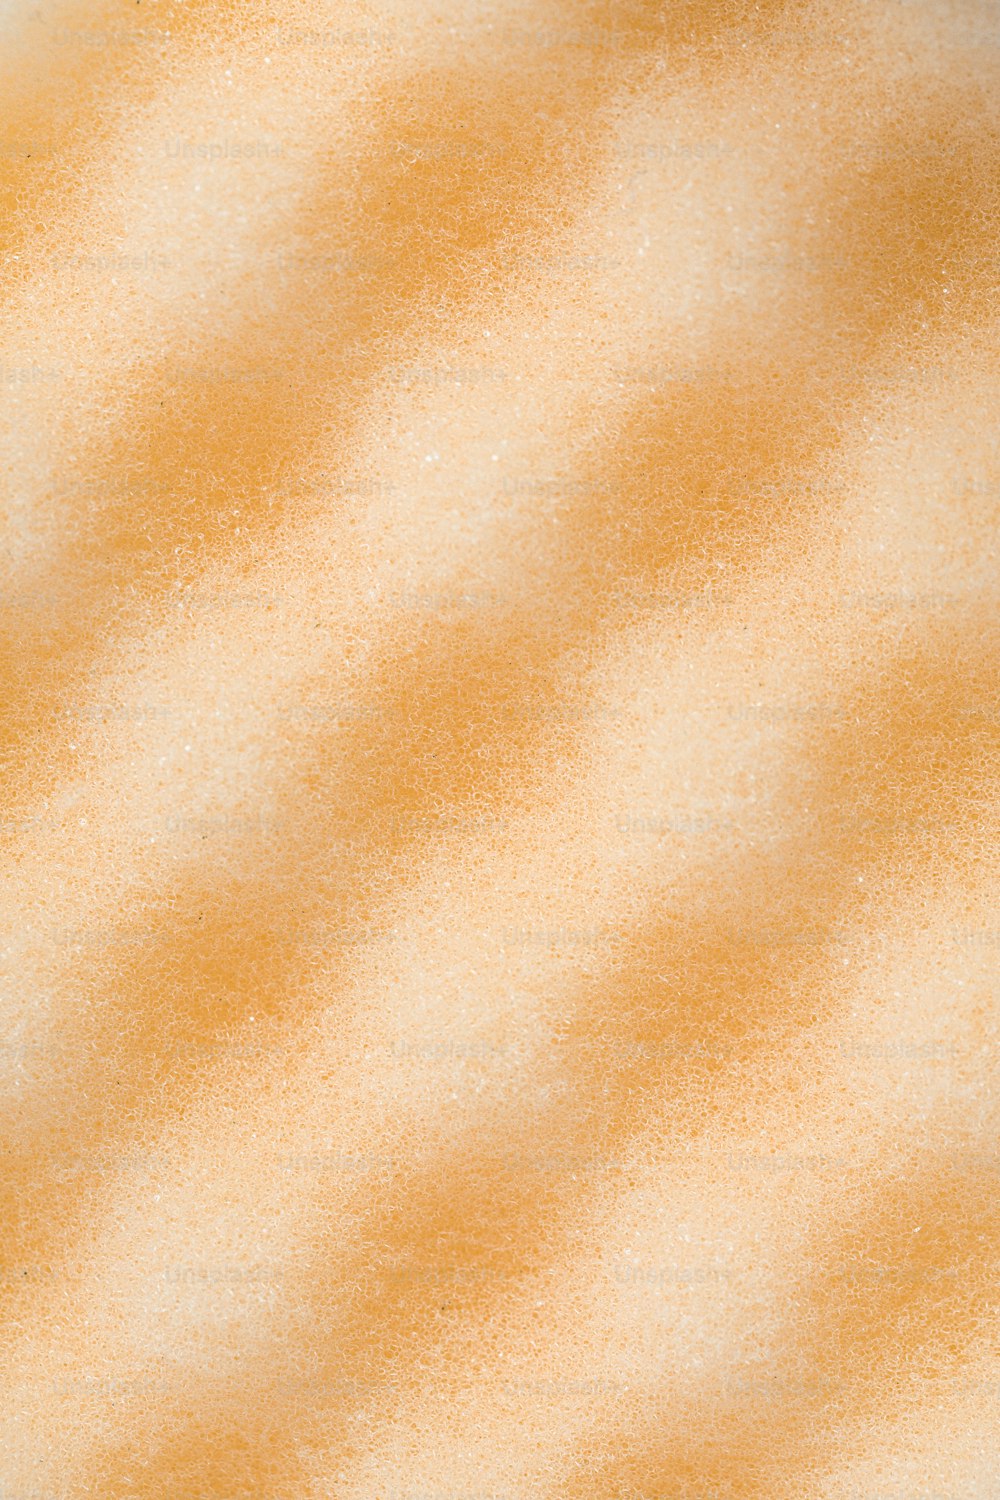 Gros plan d’un fond orange et blanc